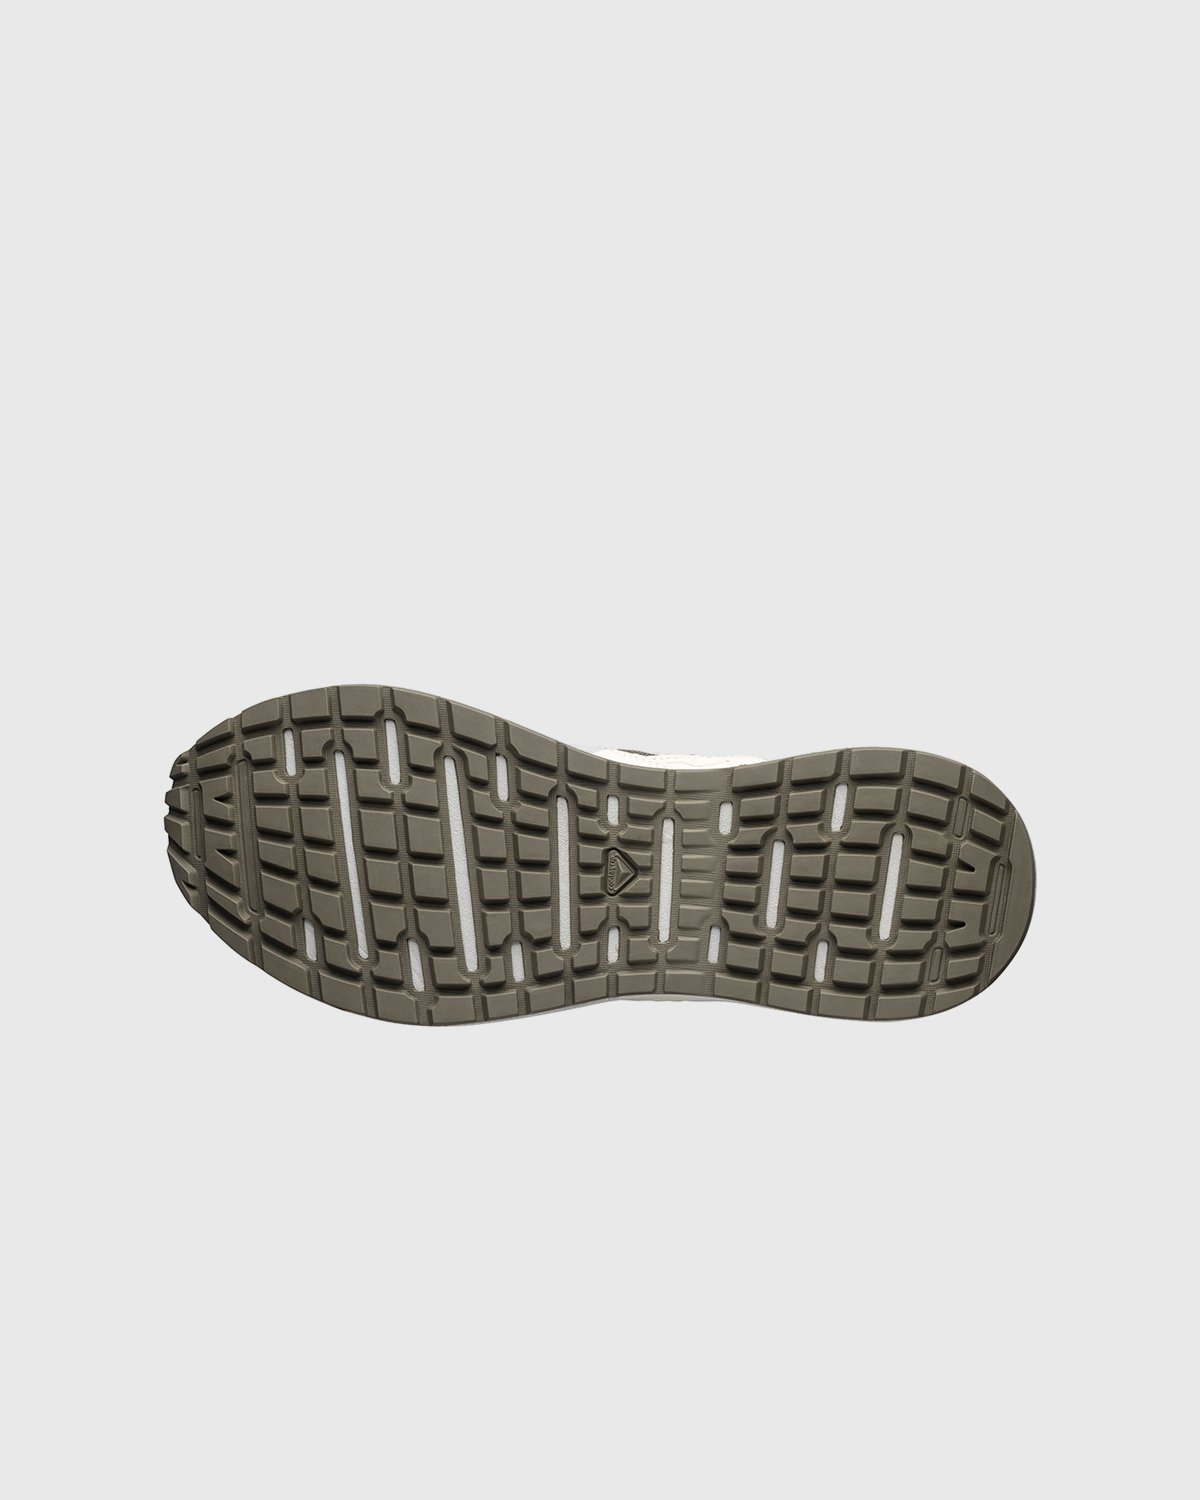 Salomon - Odyssey 1 Advanced Bleached - Footwear - Beige - Image 5